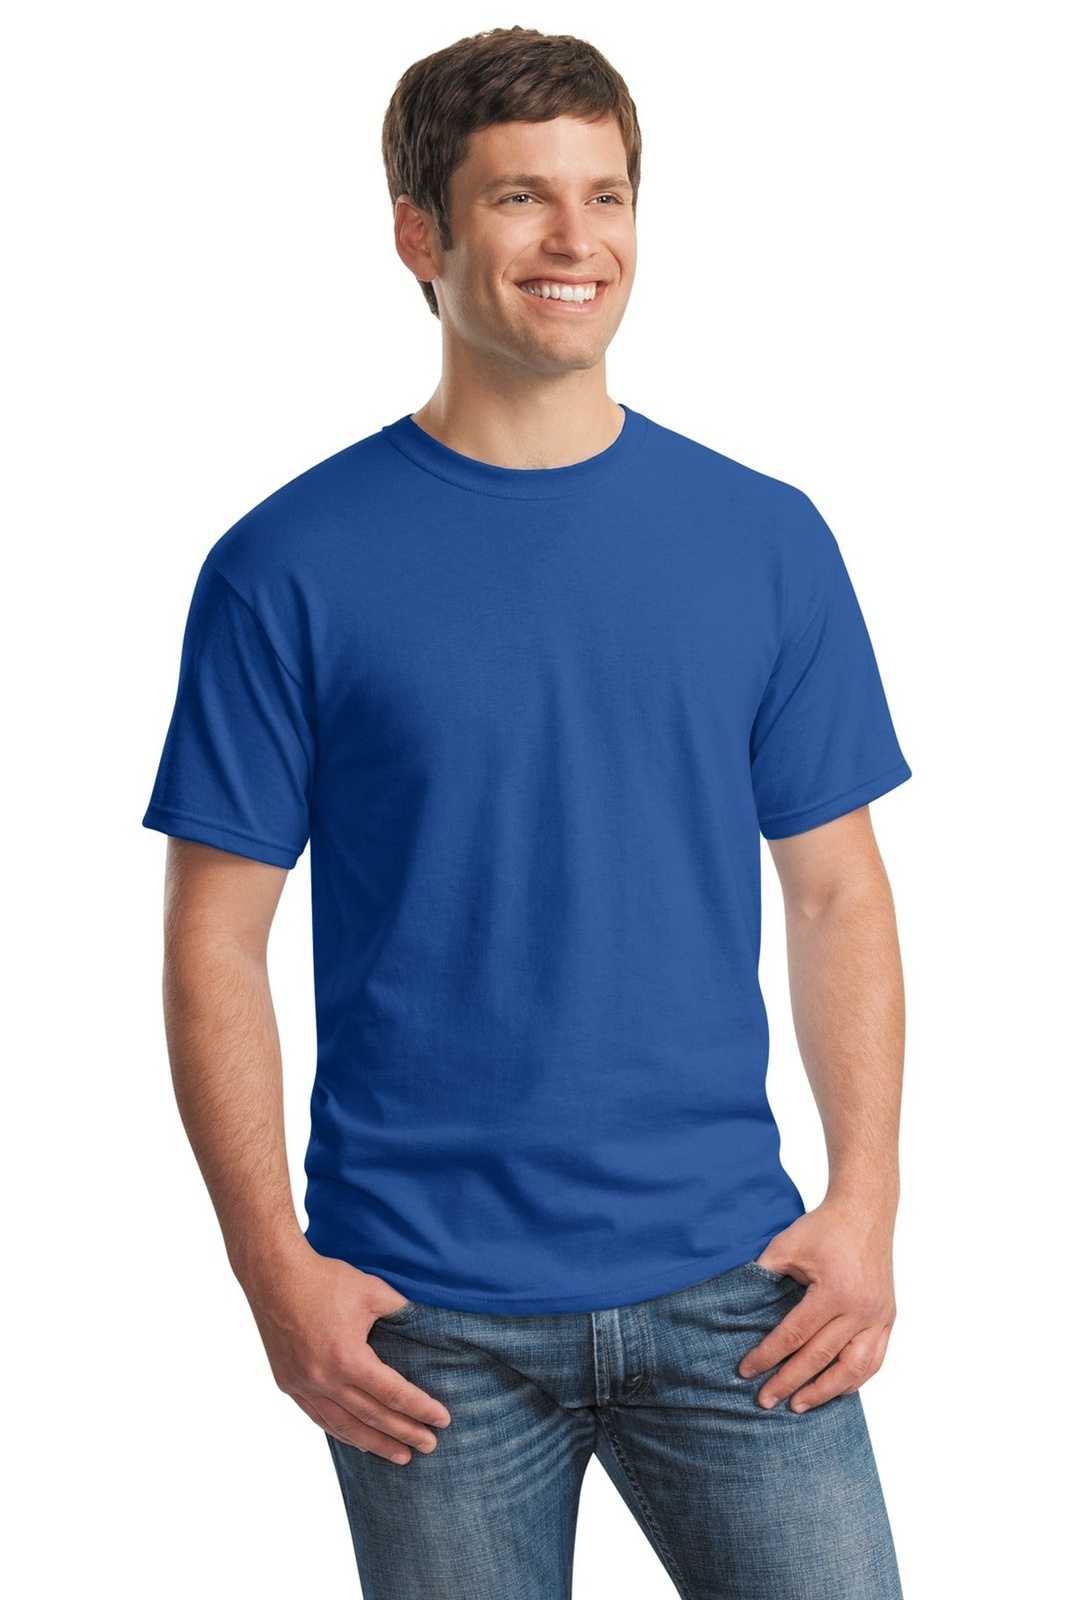 Gildan 5000 Heavy Cotton 100% Cotton T-Shirt - Neon Blue - HIT a Double